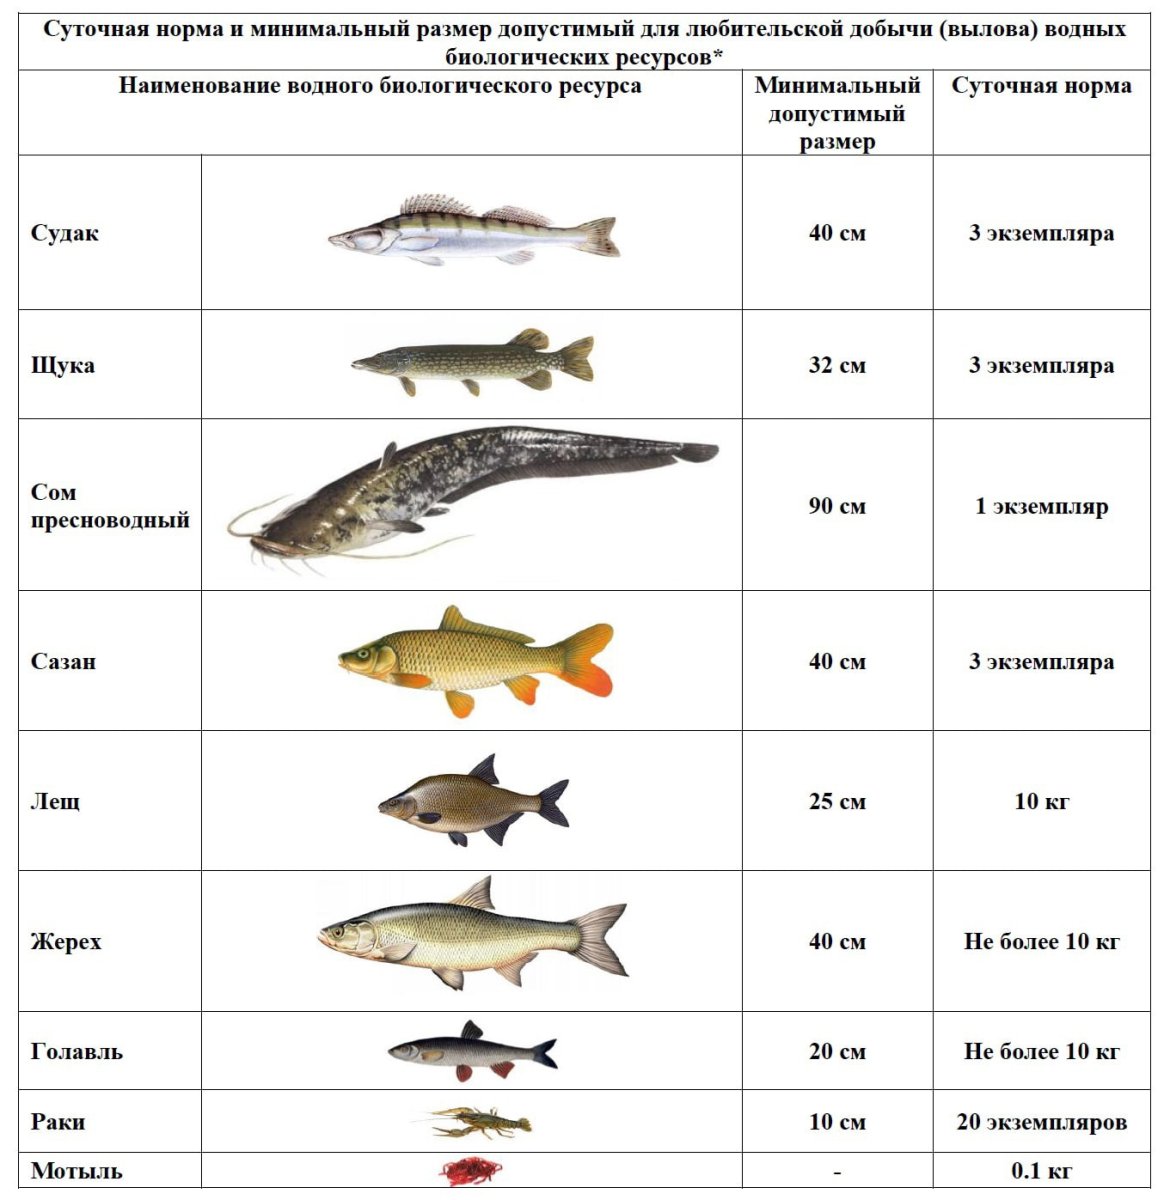 Размеры рыб можно ловить. Разрешенный размер судака. Таблица размеров допустимый пойманной рыбы. Разрешённый размер рыбы для вылова в Московской области 2021. Размер судака разрешенный к вылову.